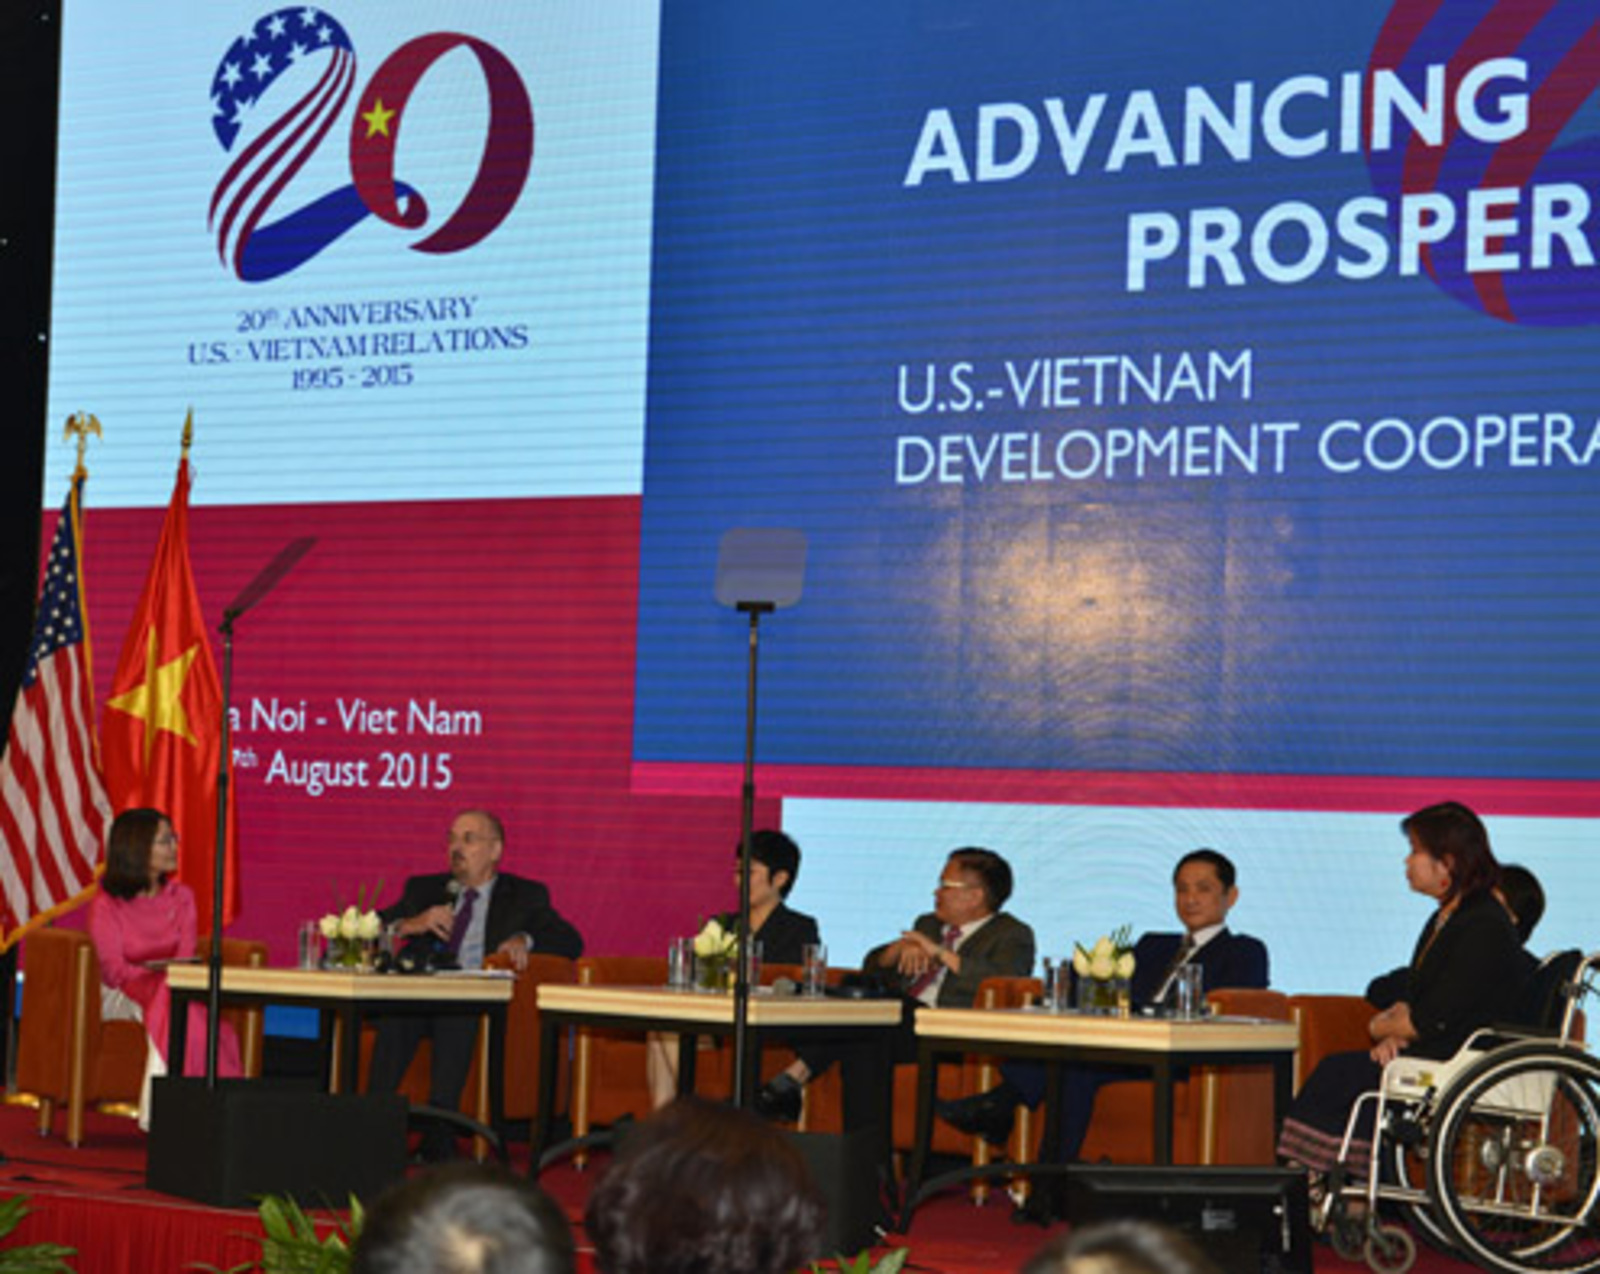 Michael DiGregorio speaking at "Advancing Prosperity: U.S.-Vietnam Development Cooperation."